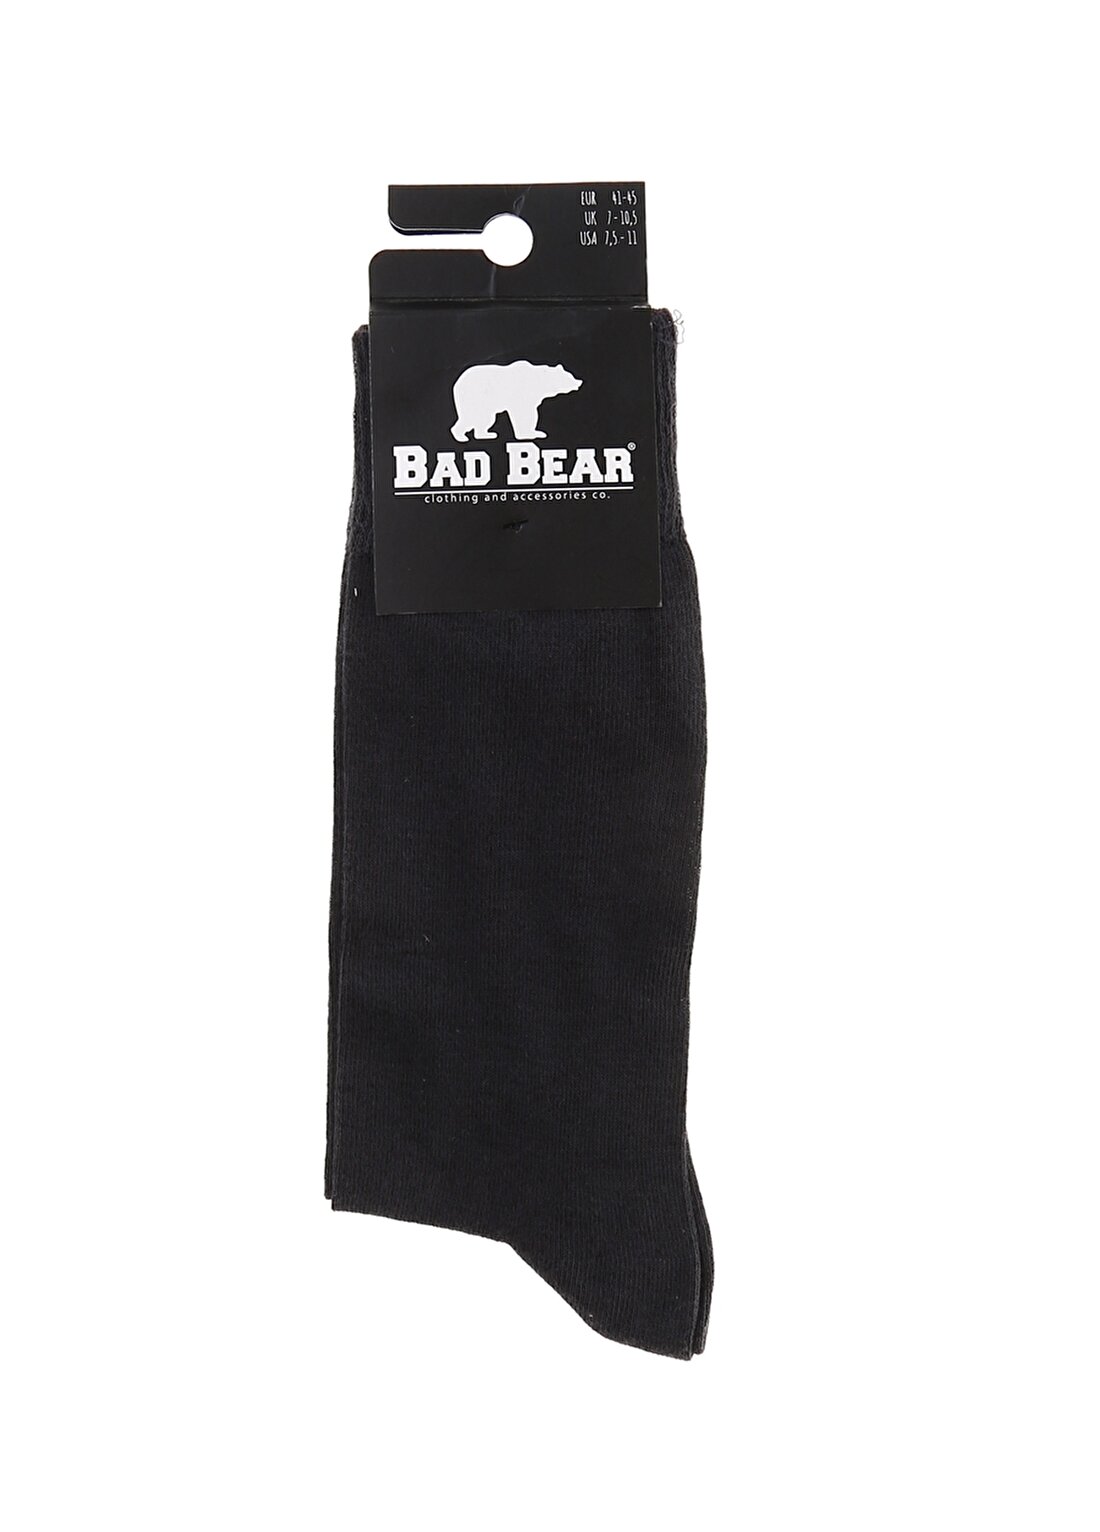 Bad Bear Düz Antrasit Erkek T-Shirt 18.01.02.010.02 SO